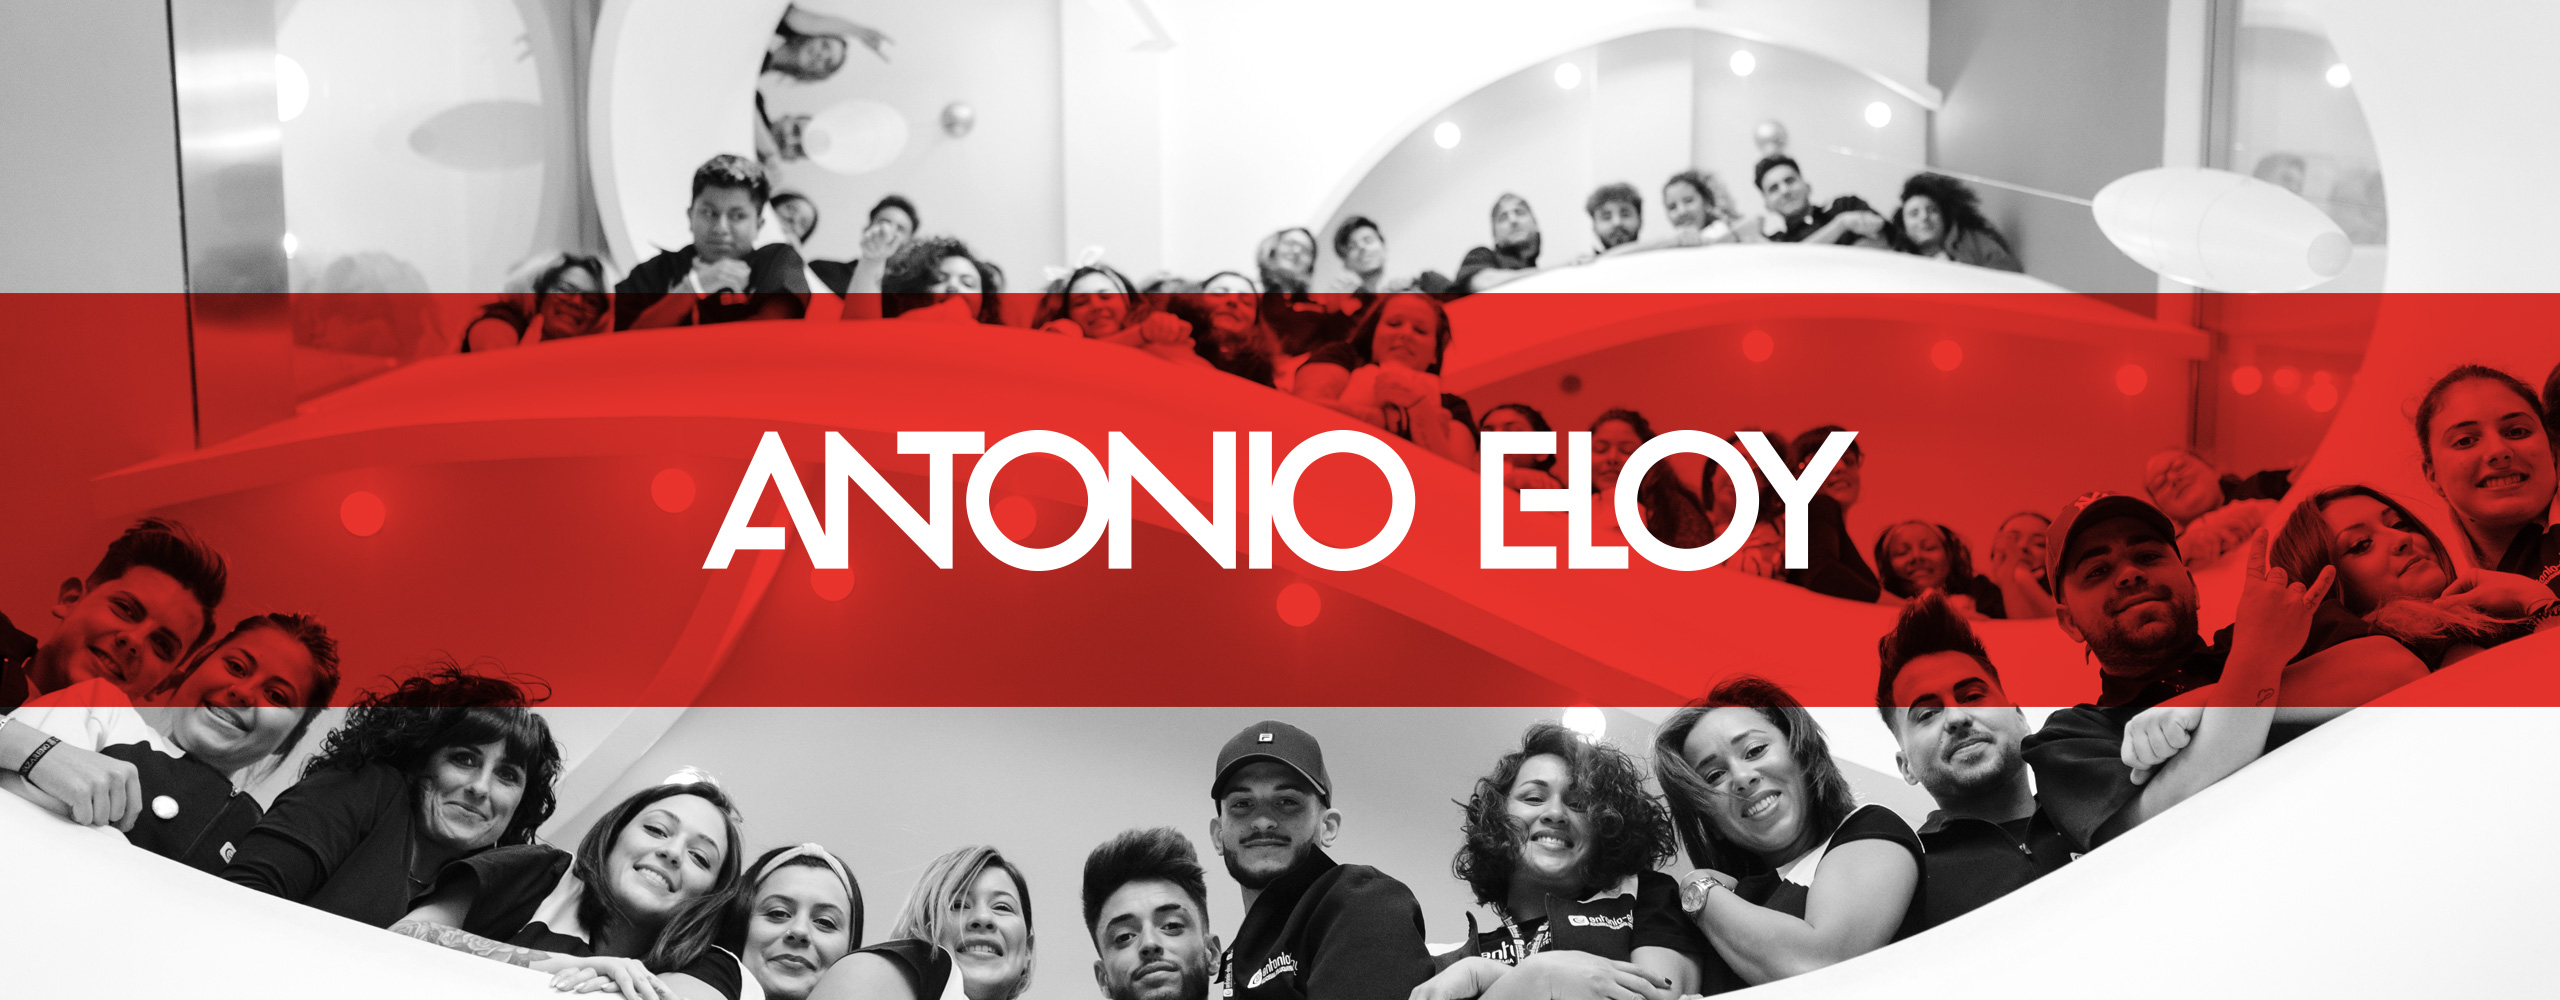 Proyecto - Academia Antonio-Eloy | Infodel Media. Creatividad Visual